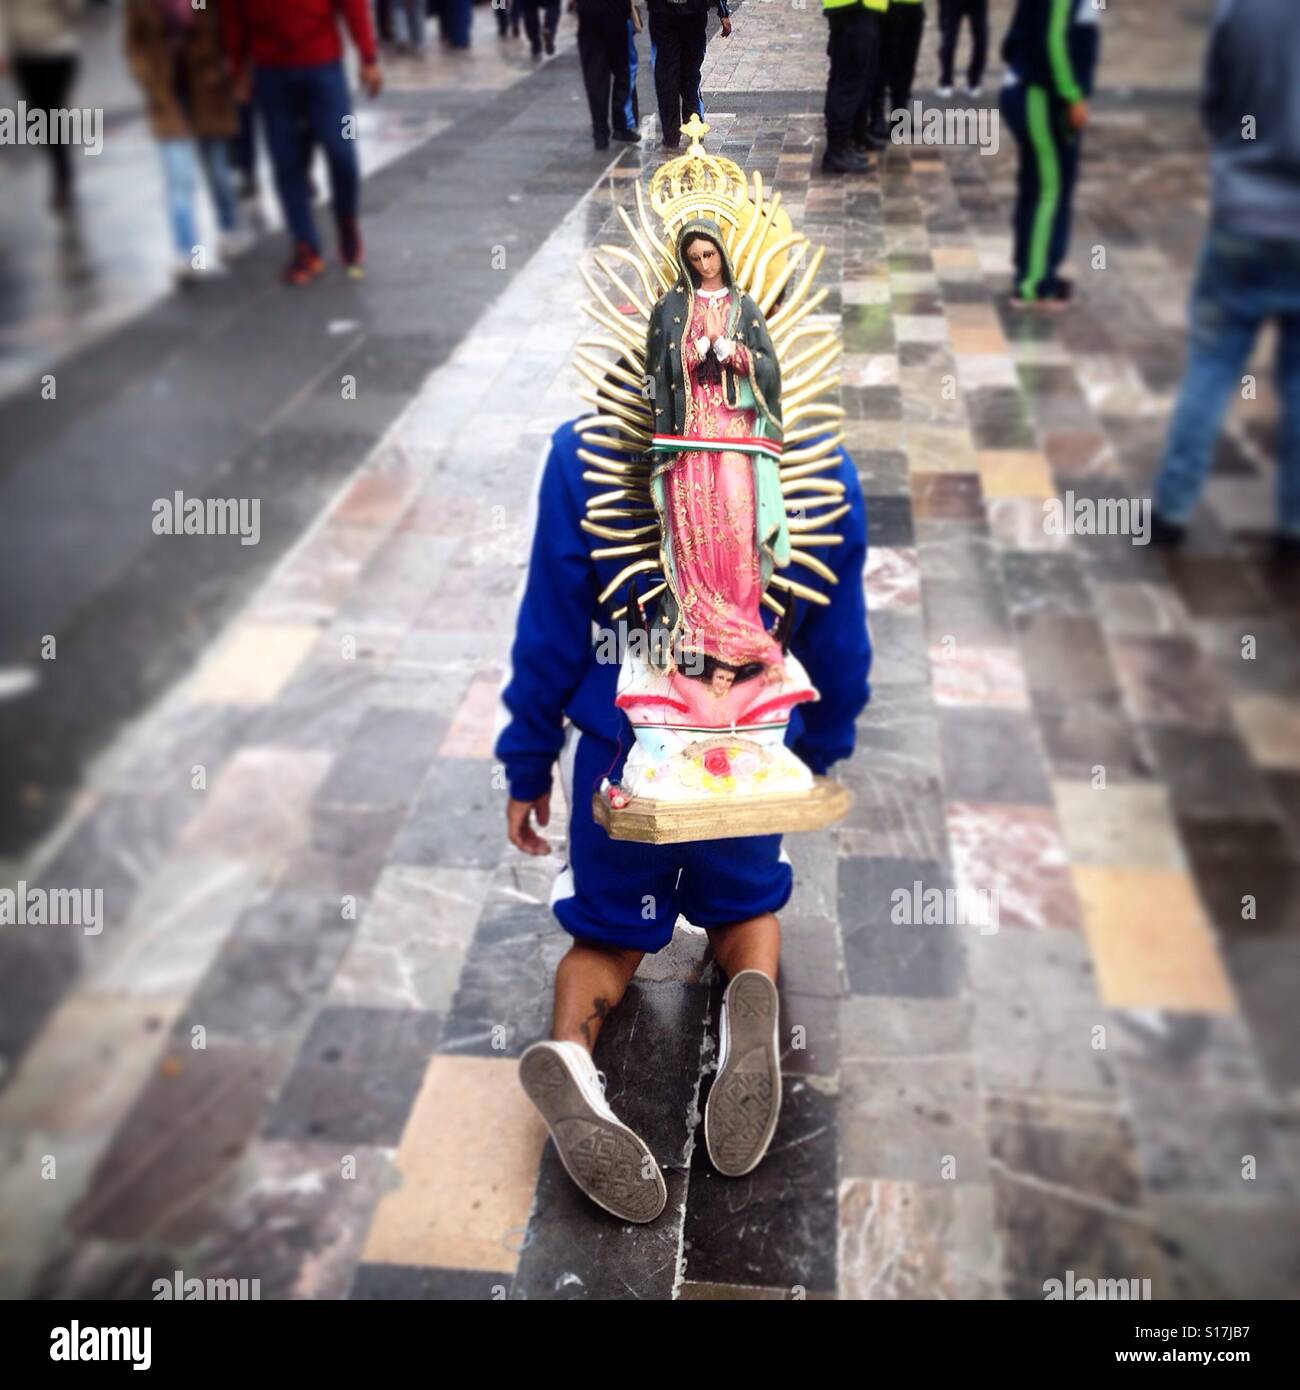 Ein Mann betritt Spaziergänge auf den Knien während der jährlichen Wallfahrt zu unserer lieben Frau von Guadalupe in Mexiko-Stadt, Mexiko Stockfoto